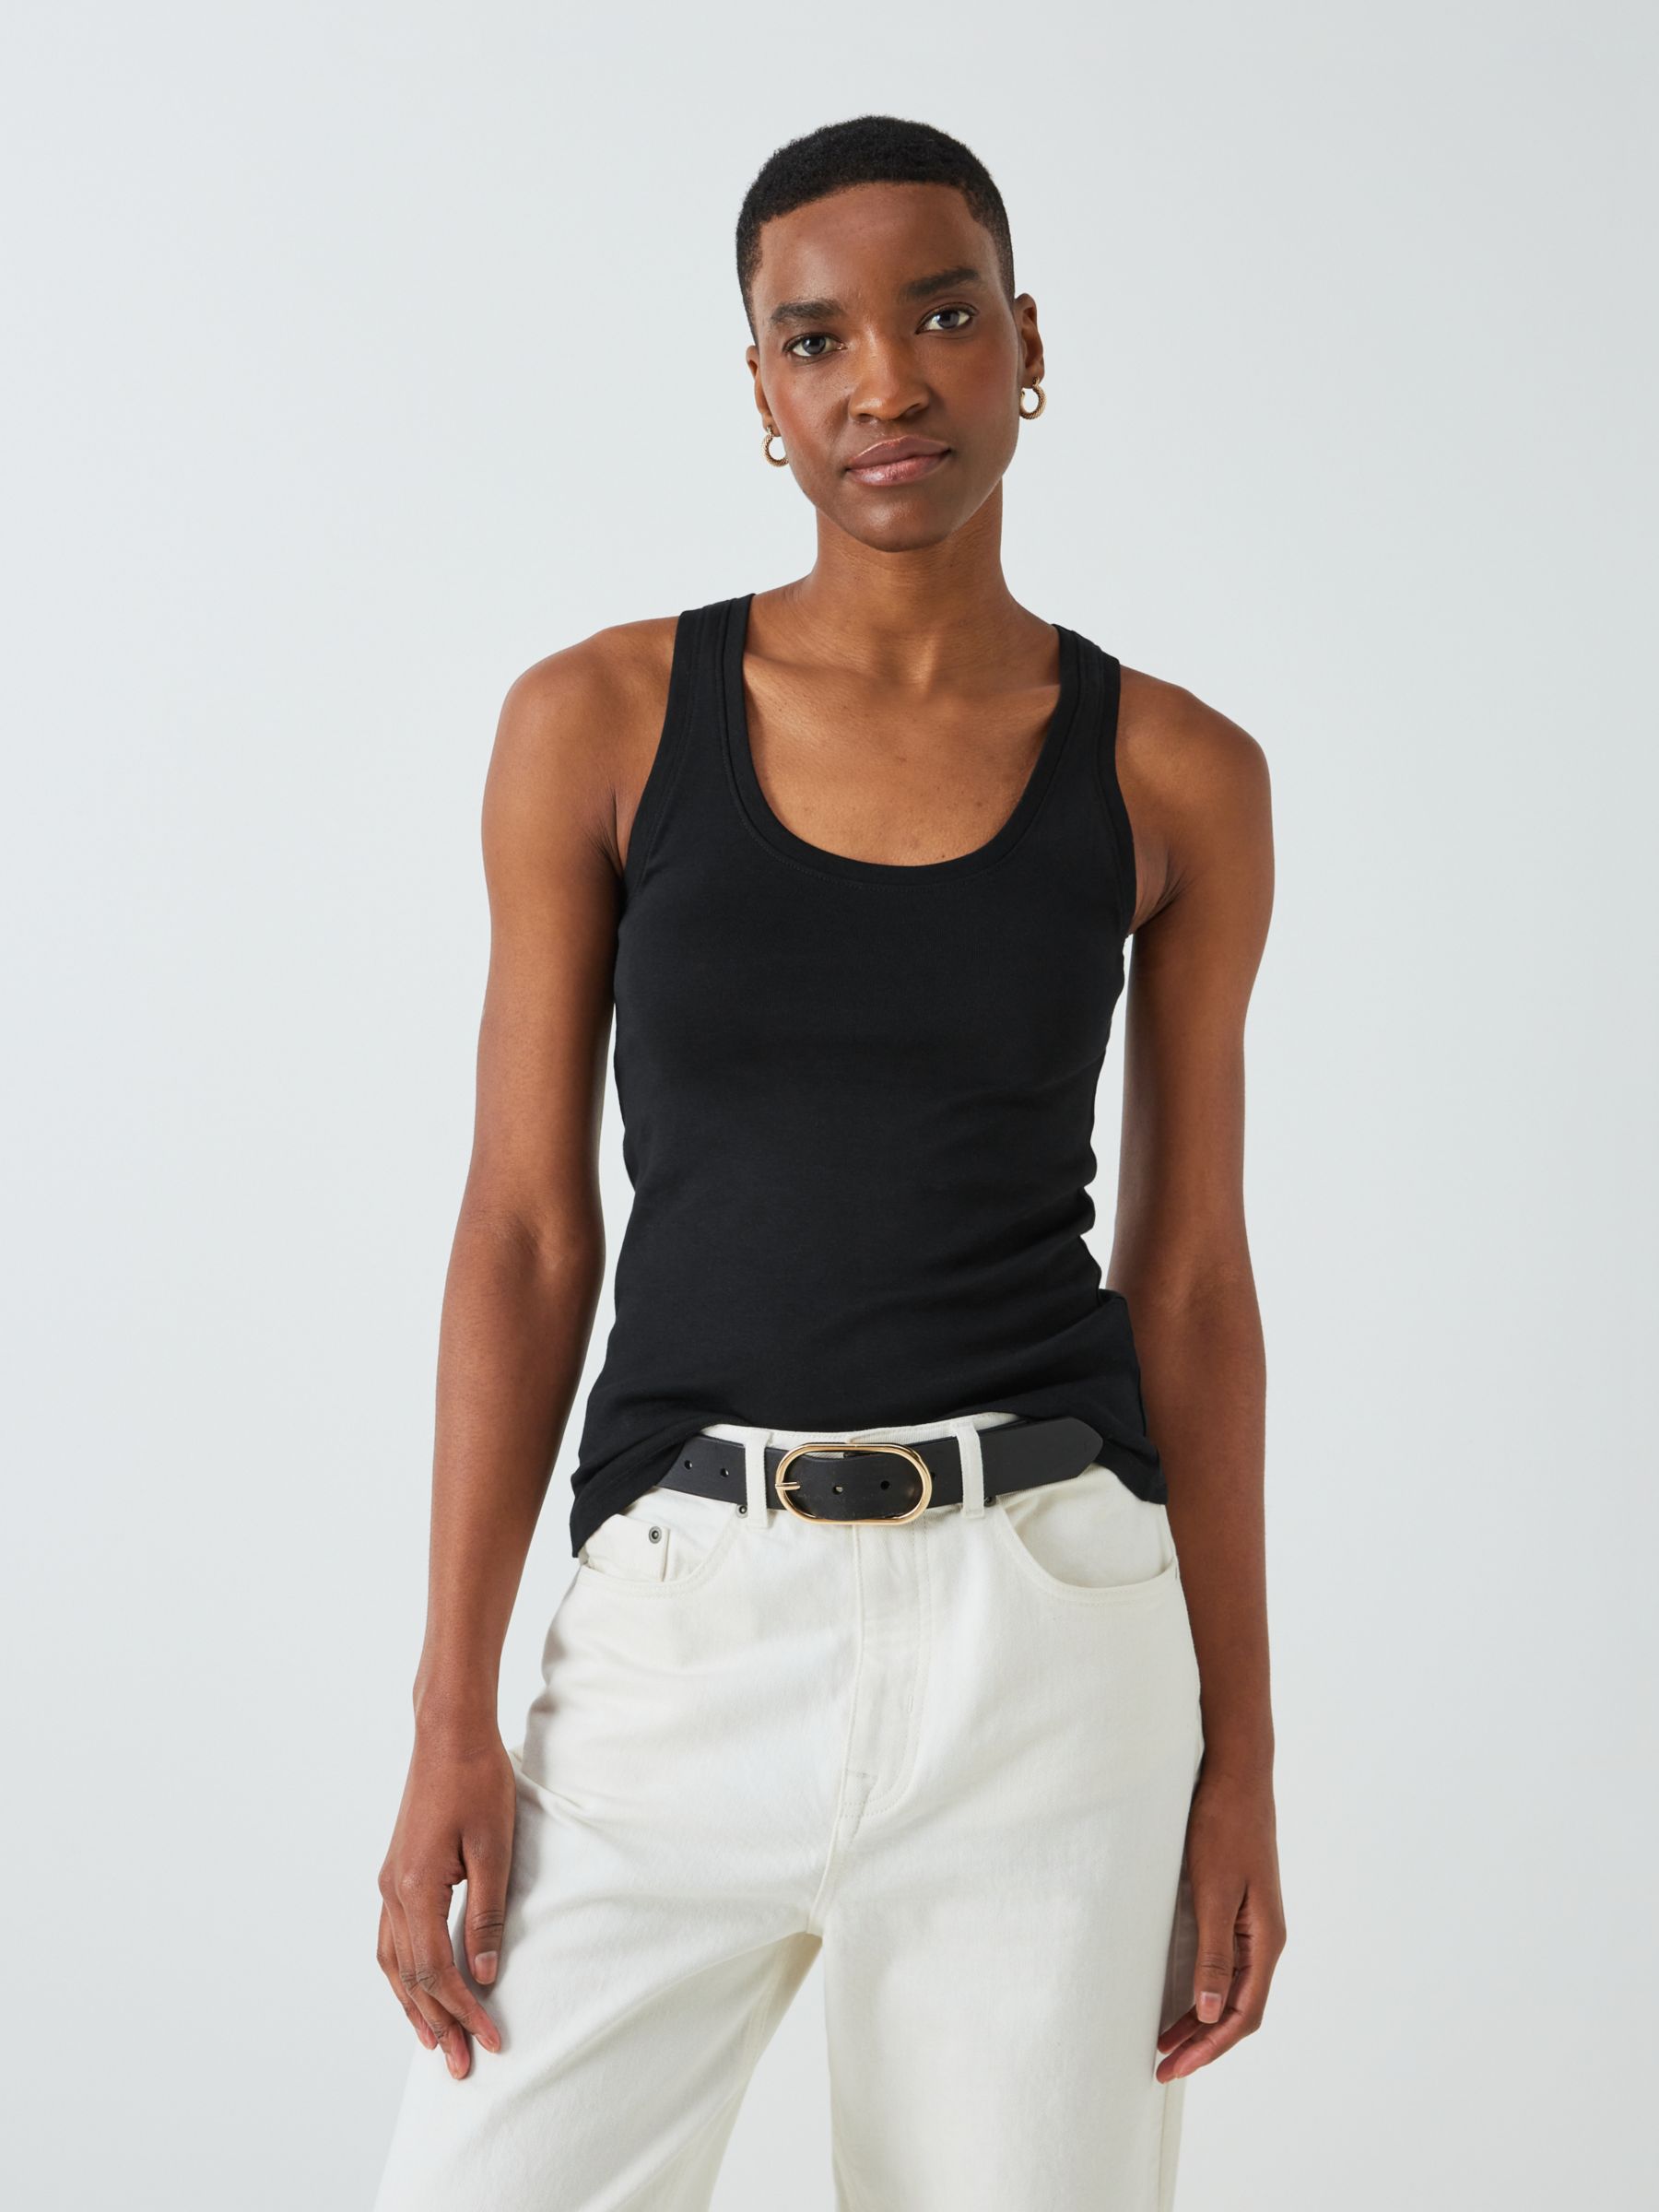  Modest High Neck Tank Top For Women Full-Shoulder Sleeveless  Shell Plus Size 22 Off White